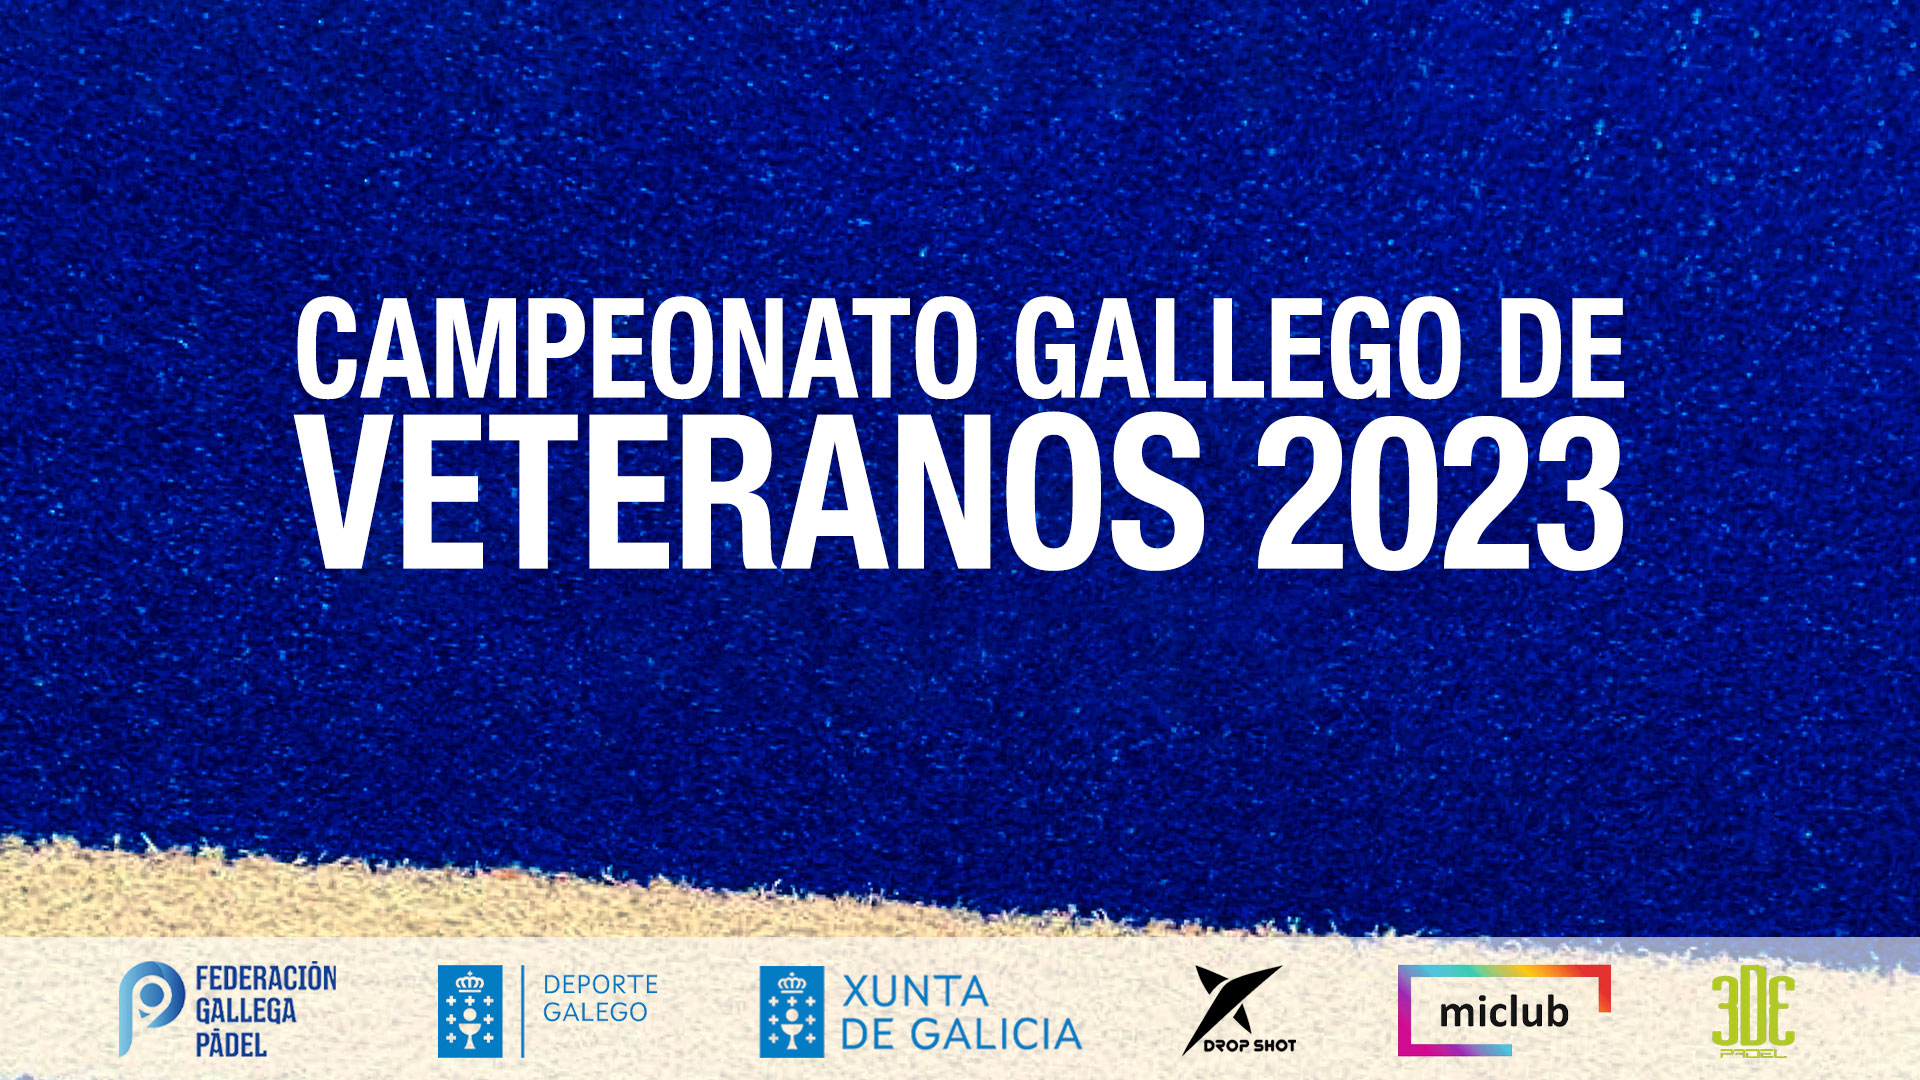 Campeonato Gallego de Veteranos 2023